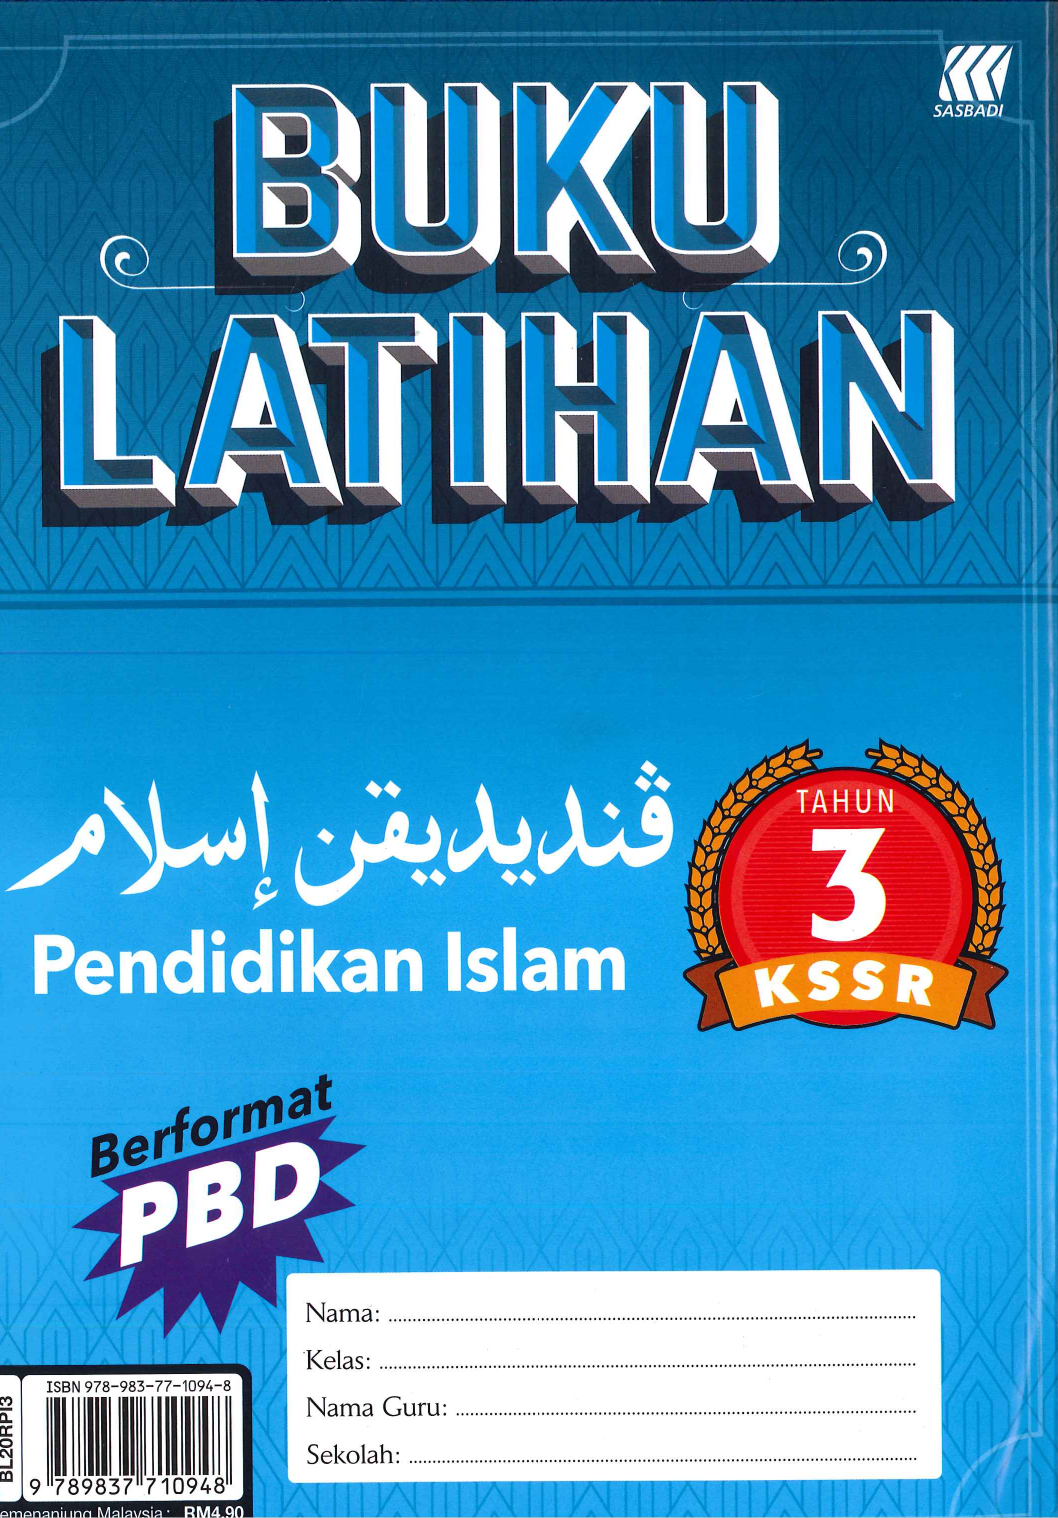 Buku Latihan Pendidikan Islam Tahun 3